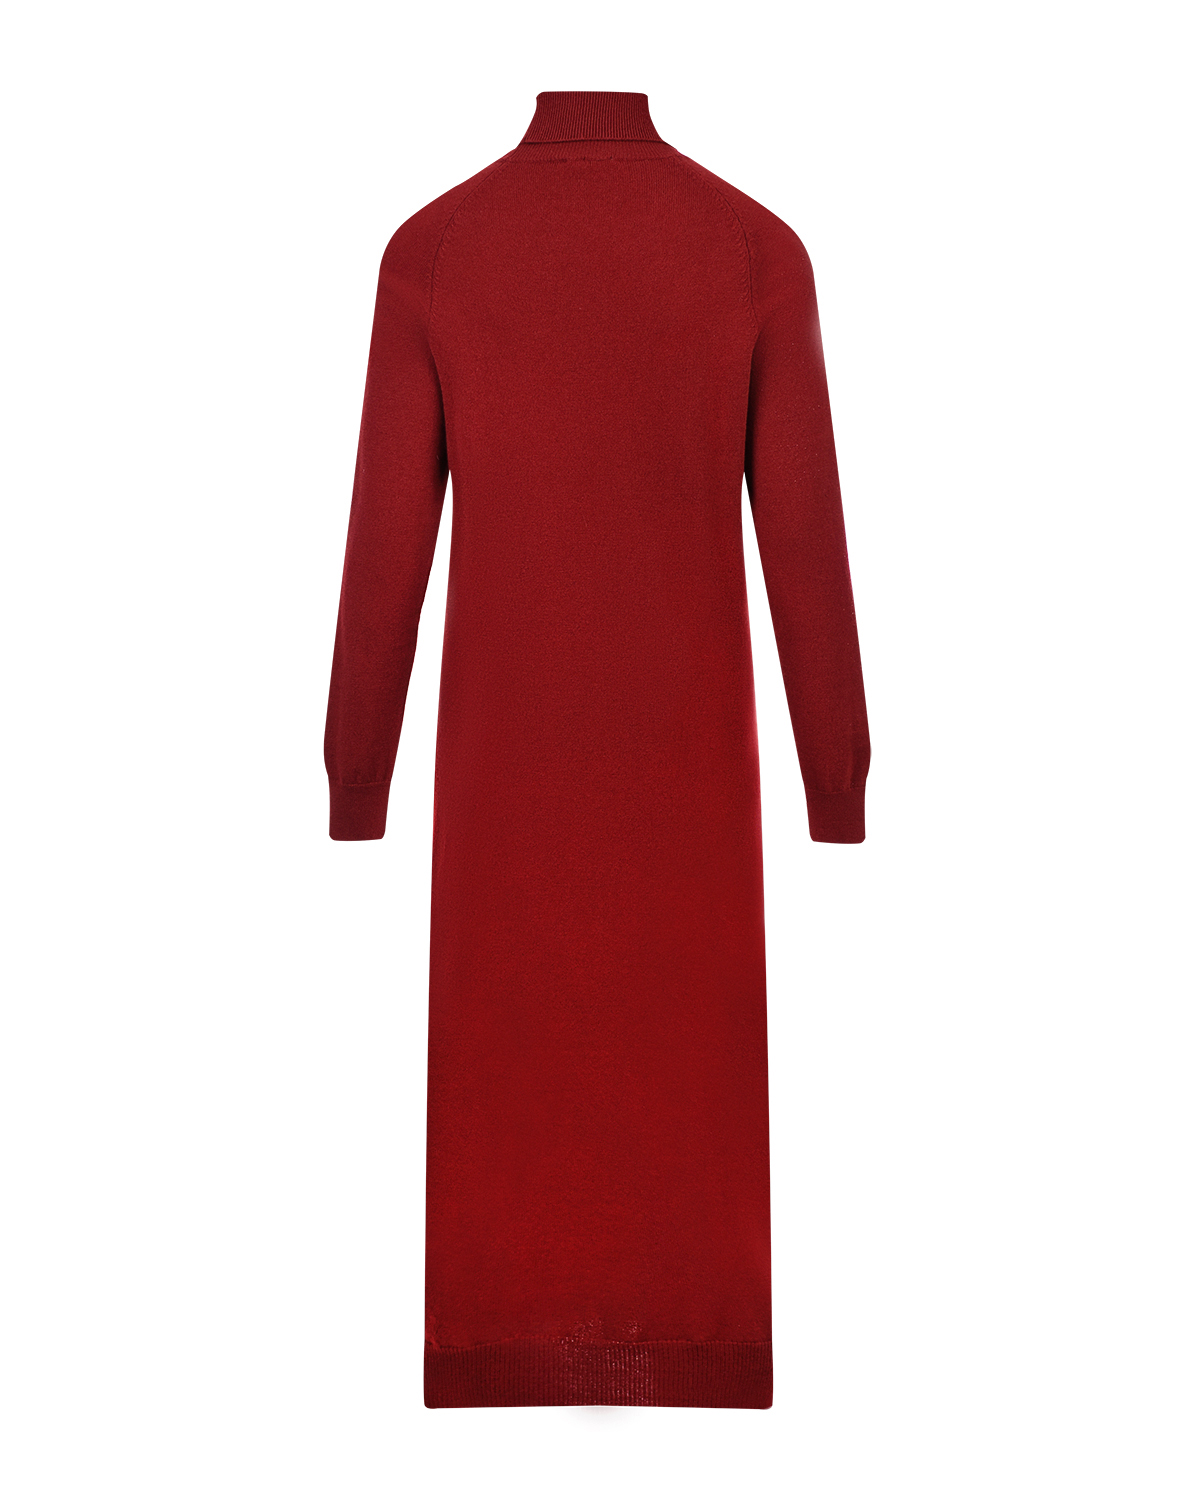 Бордовое платье-водолазка из шерсти и кашемира MRZ - фото 5